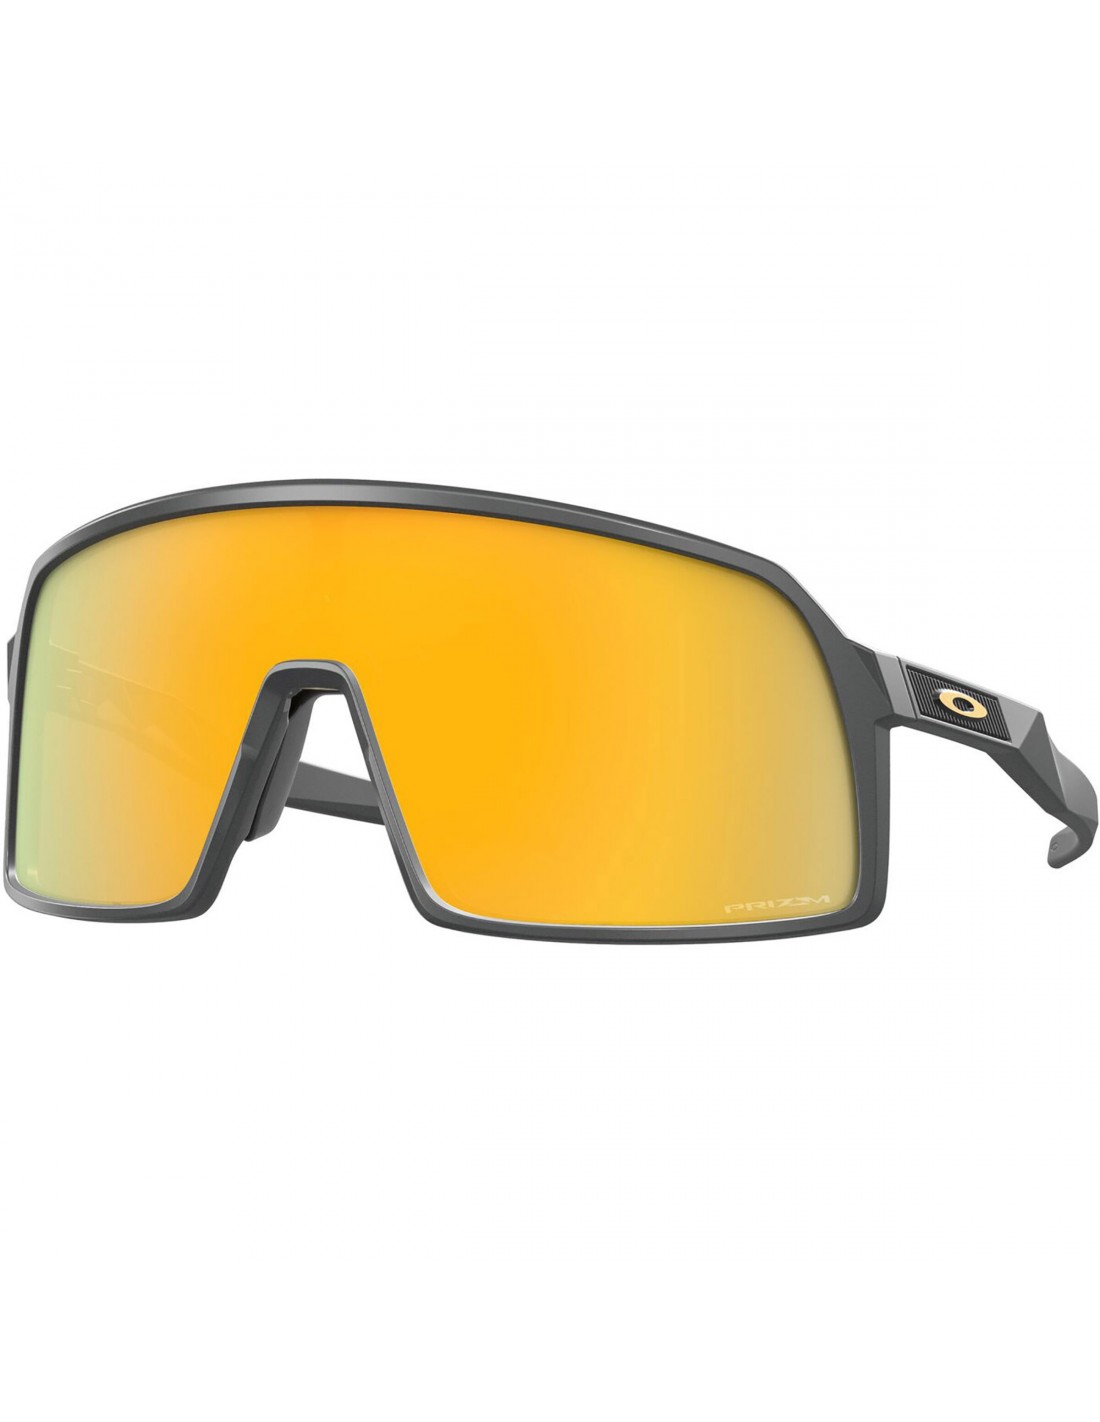 Oakley Sutro S, Matte Carbon, Prizm 24K Brillenfassung - Sportbrillen, von Oakley